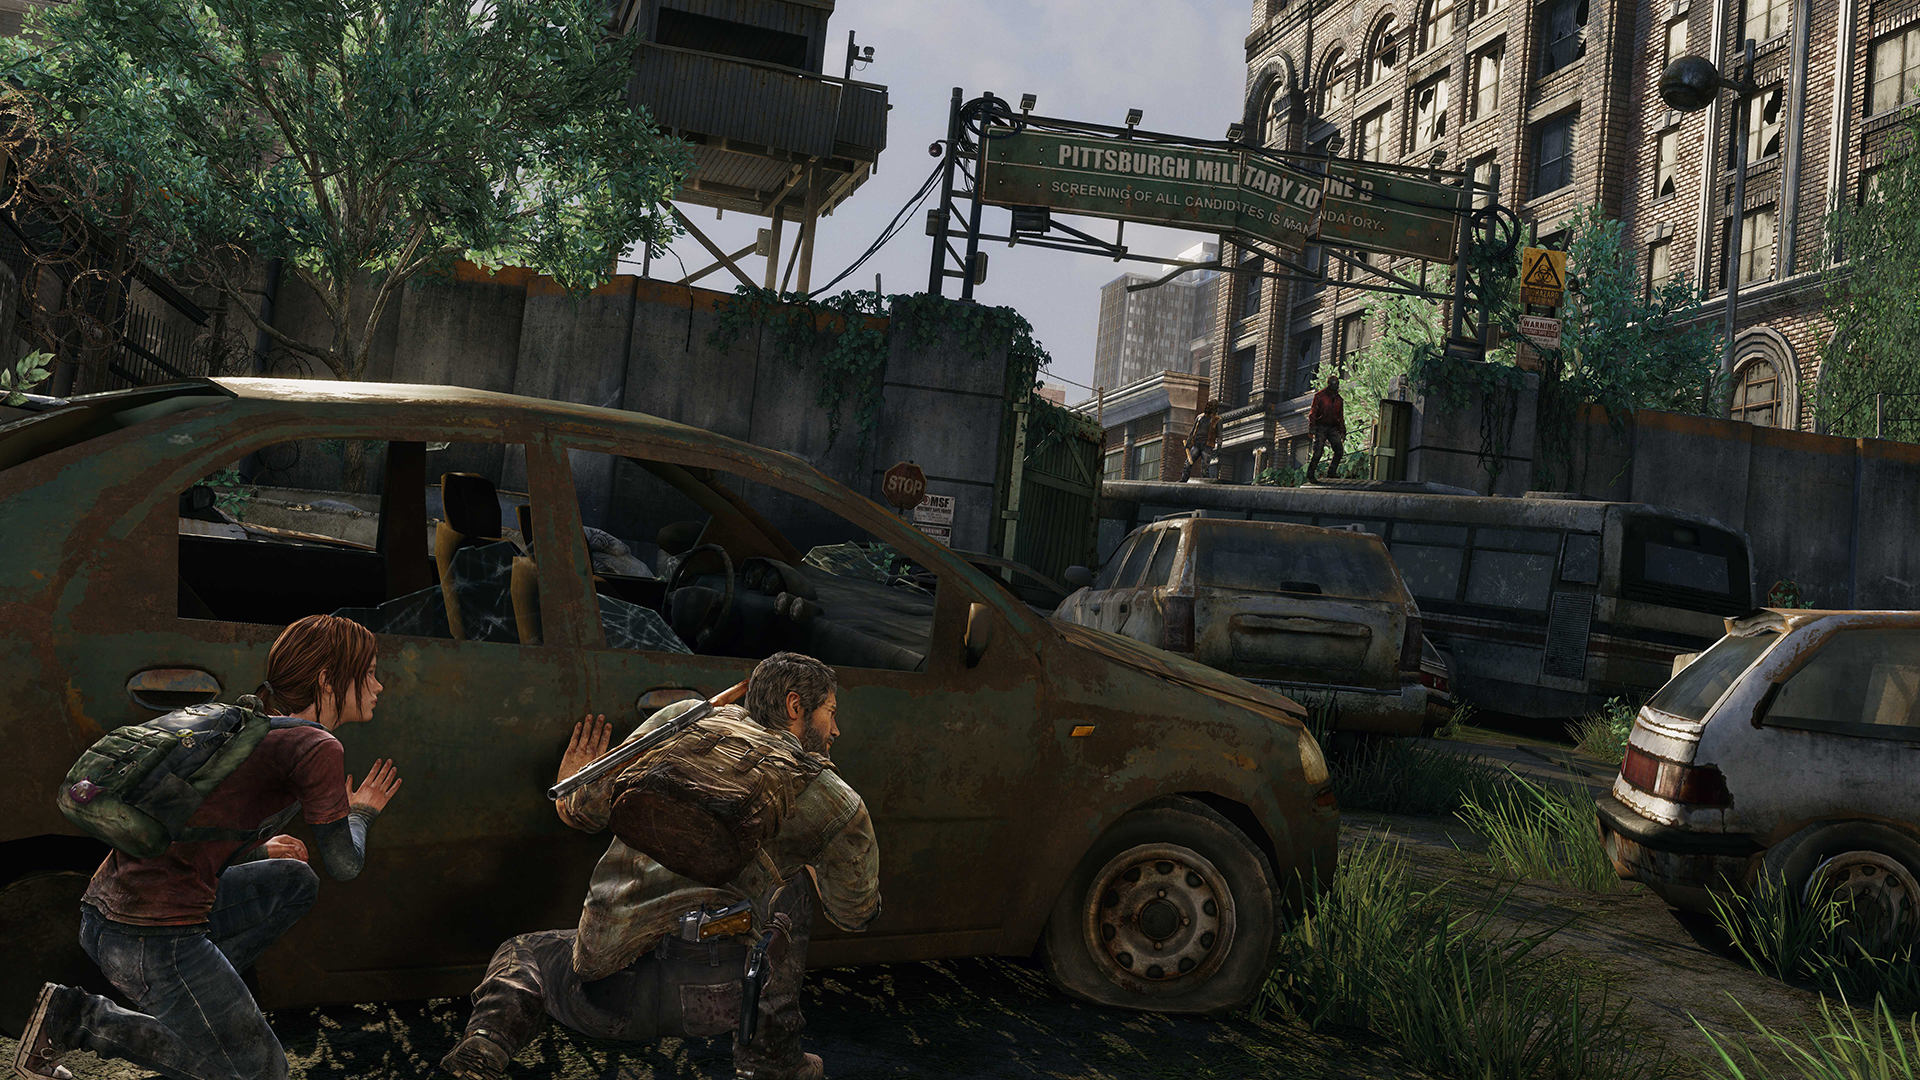 The Last Of Us Remastered PS4 Midia digital Promoção - Raimundogamer midia  digital